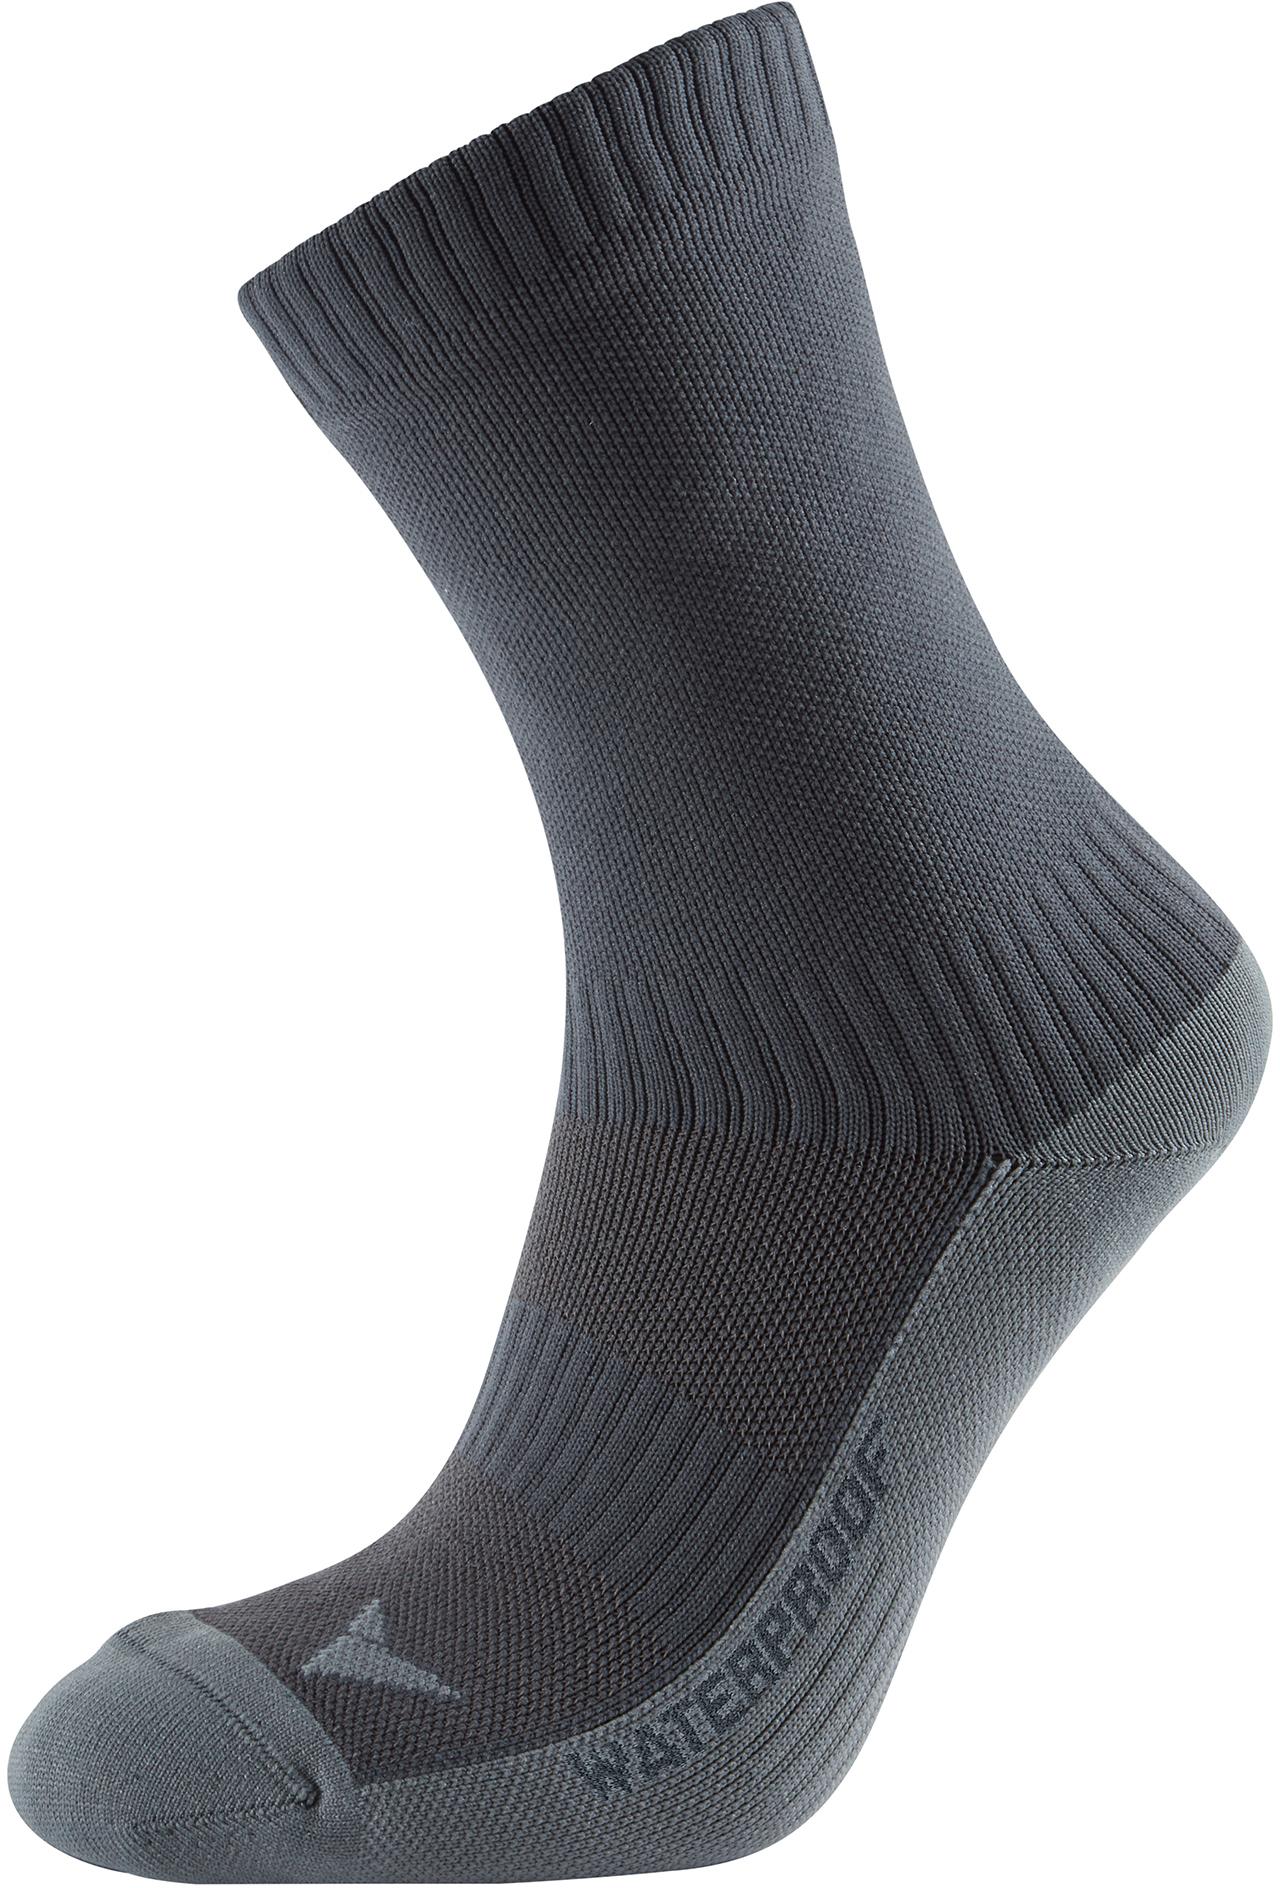 Altura Waterproof Socks Black L/Xl